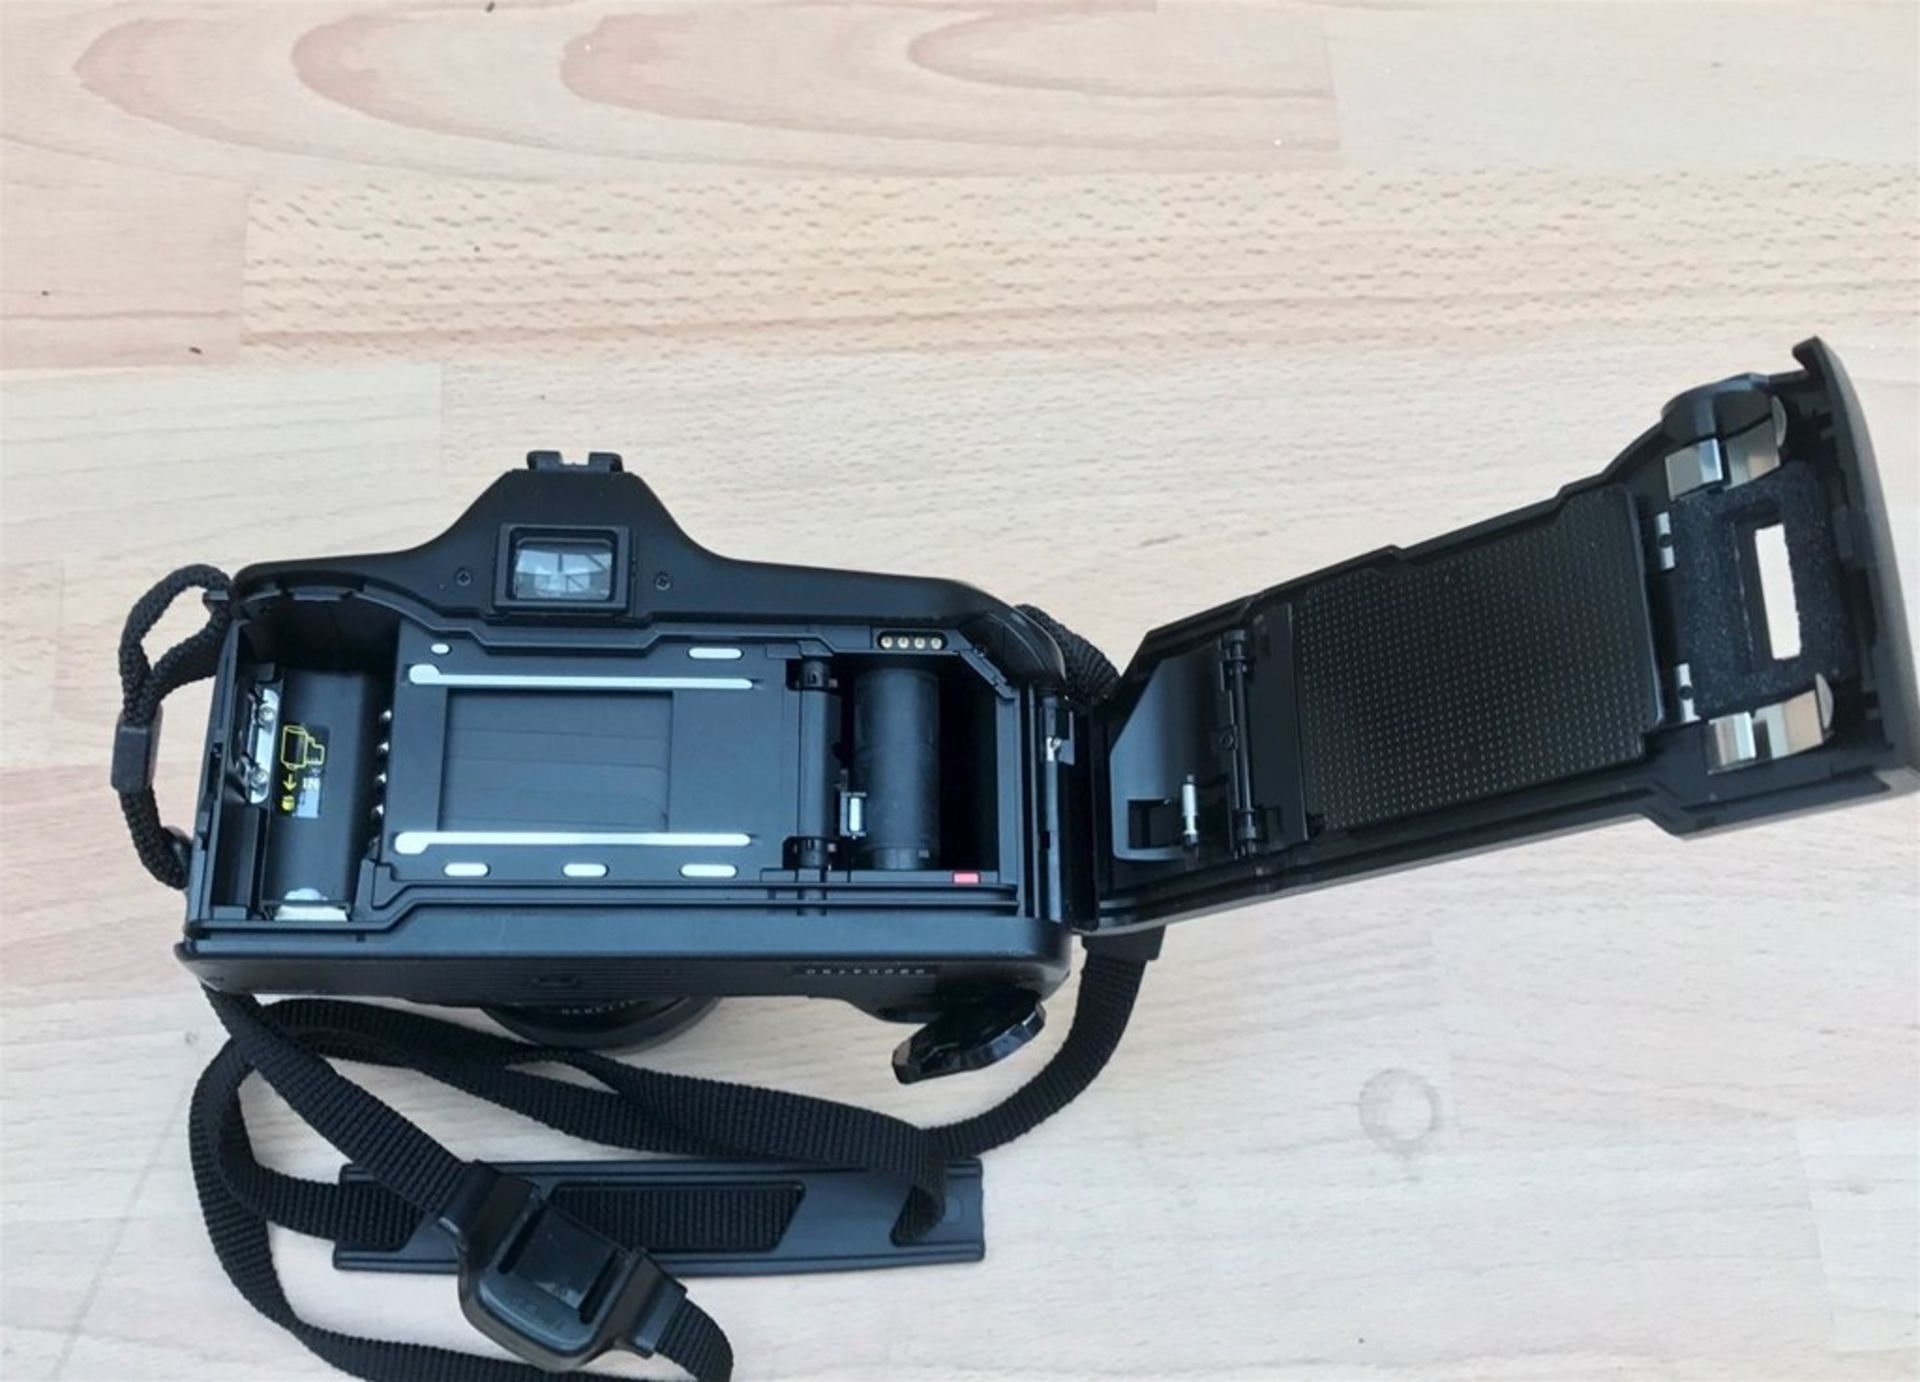 Minolta Dynax 3000i AF SLR Body 45-80mm 1:4 (22) -56 AF Zoom Lens + Accessories - Image 5 of 5